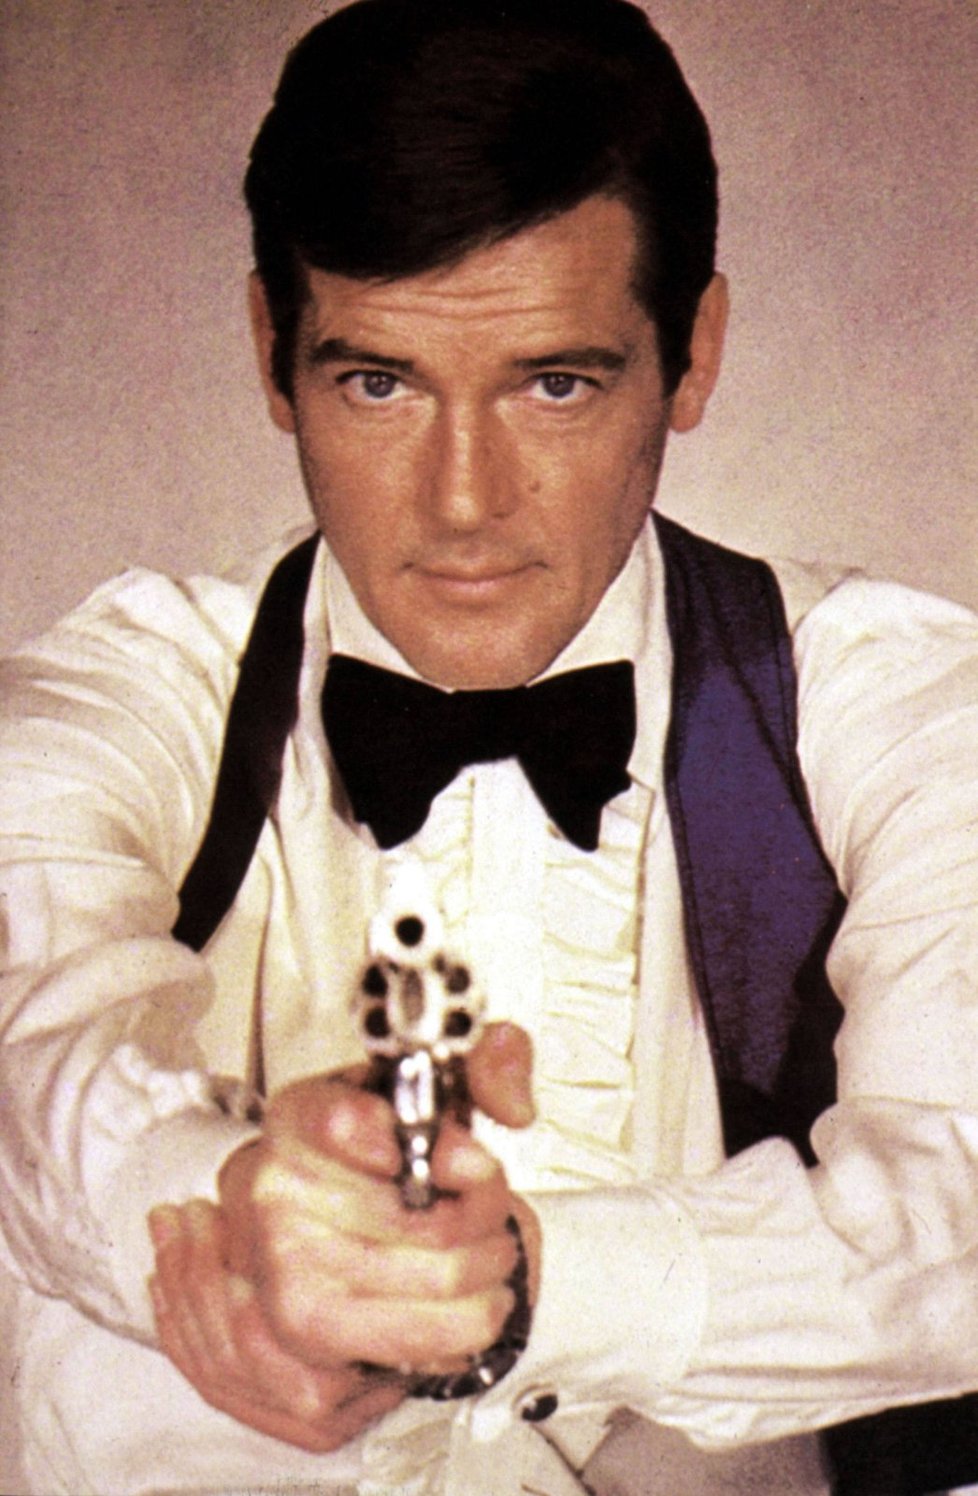 Roger Moore v roce 1973 jako agent 007.